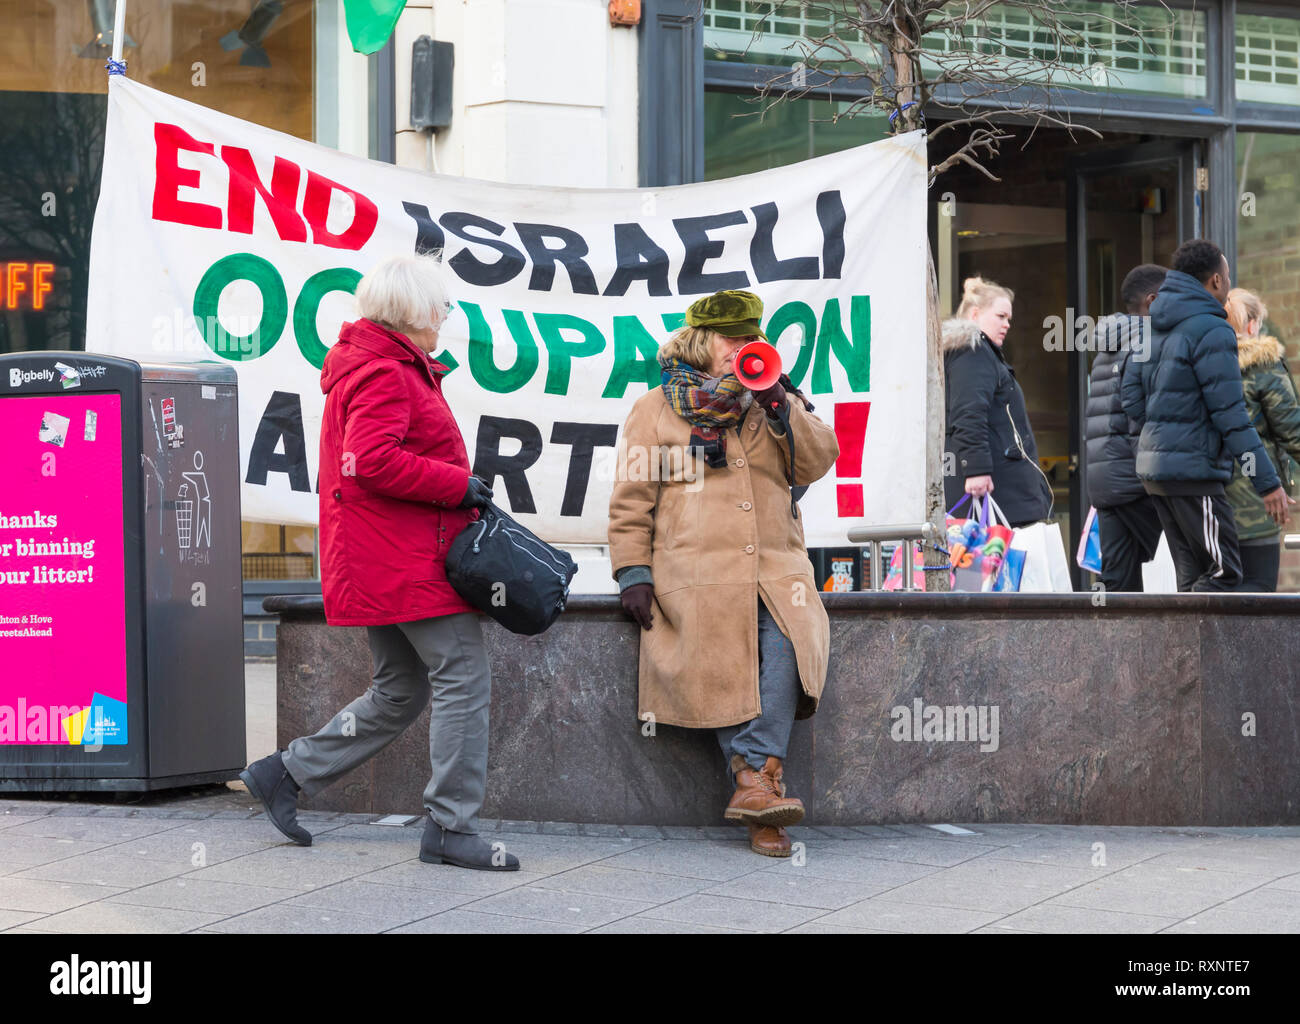 BHPSC Demonstranten in Brighton (East Sussex, UK) Protest gegen militärische israelische Besatzung der palästinensischen Gebiete. Stockfoto